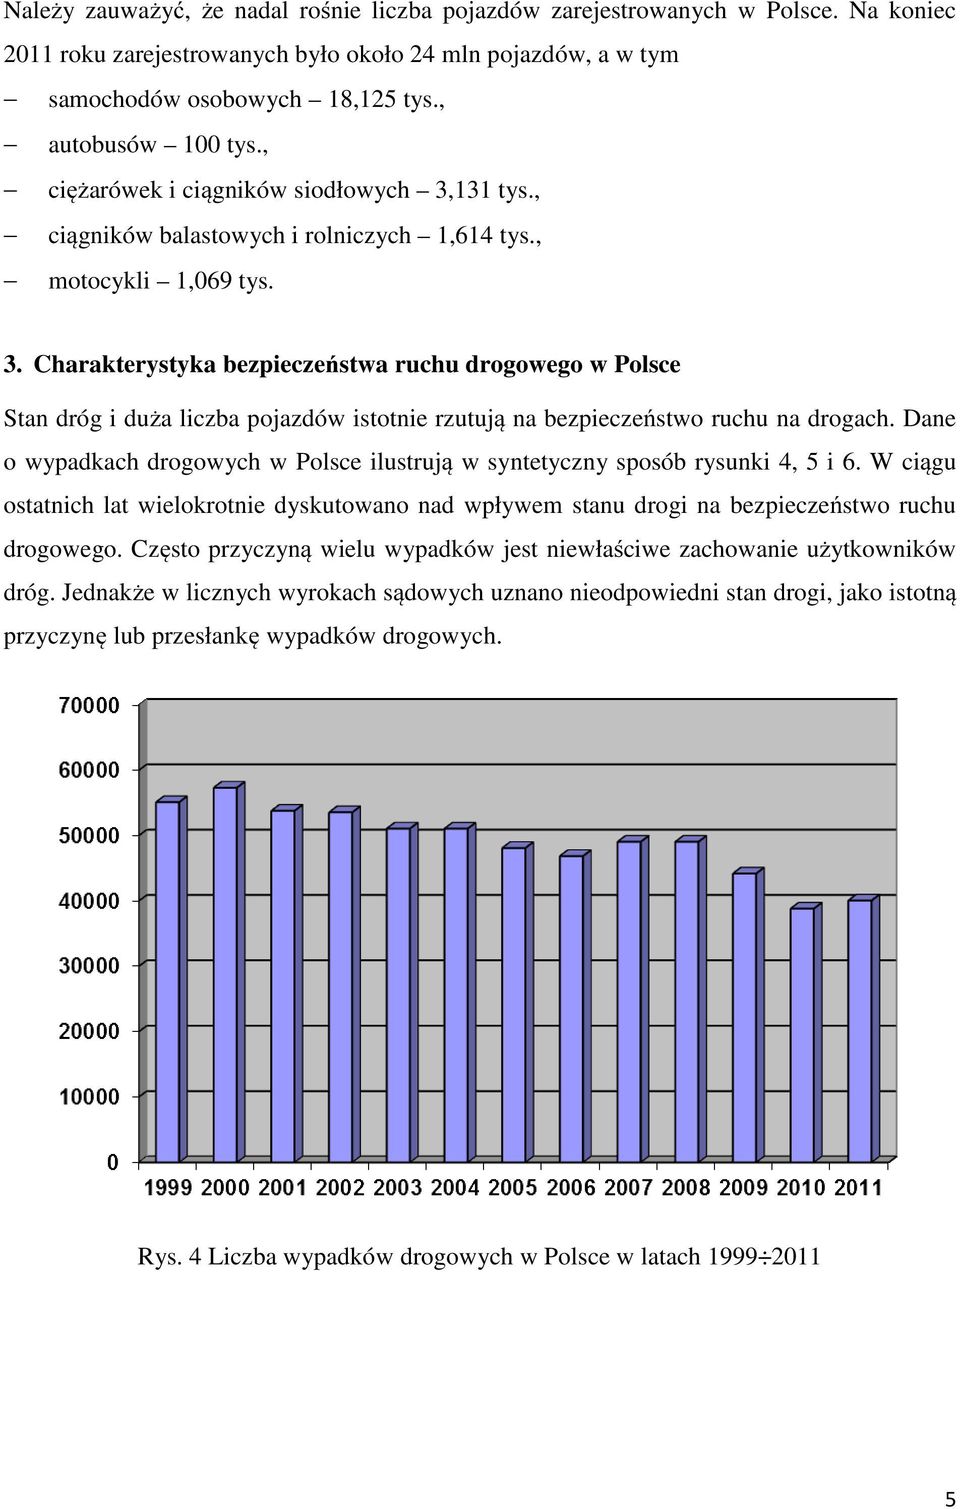 Dane o wypadkach drogowych w Polsce ilustrują w syntetyczny sposób rysunki 4, 5 i 6. W ciągu ostatnich lat wielokrotnie dyskutowano nad wpływem stanu drogi na bezpieczeństwo ruchu drogowego.